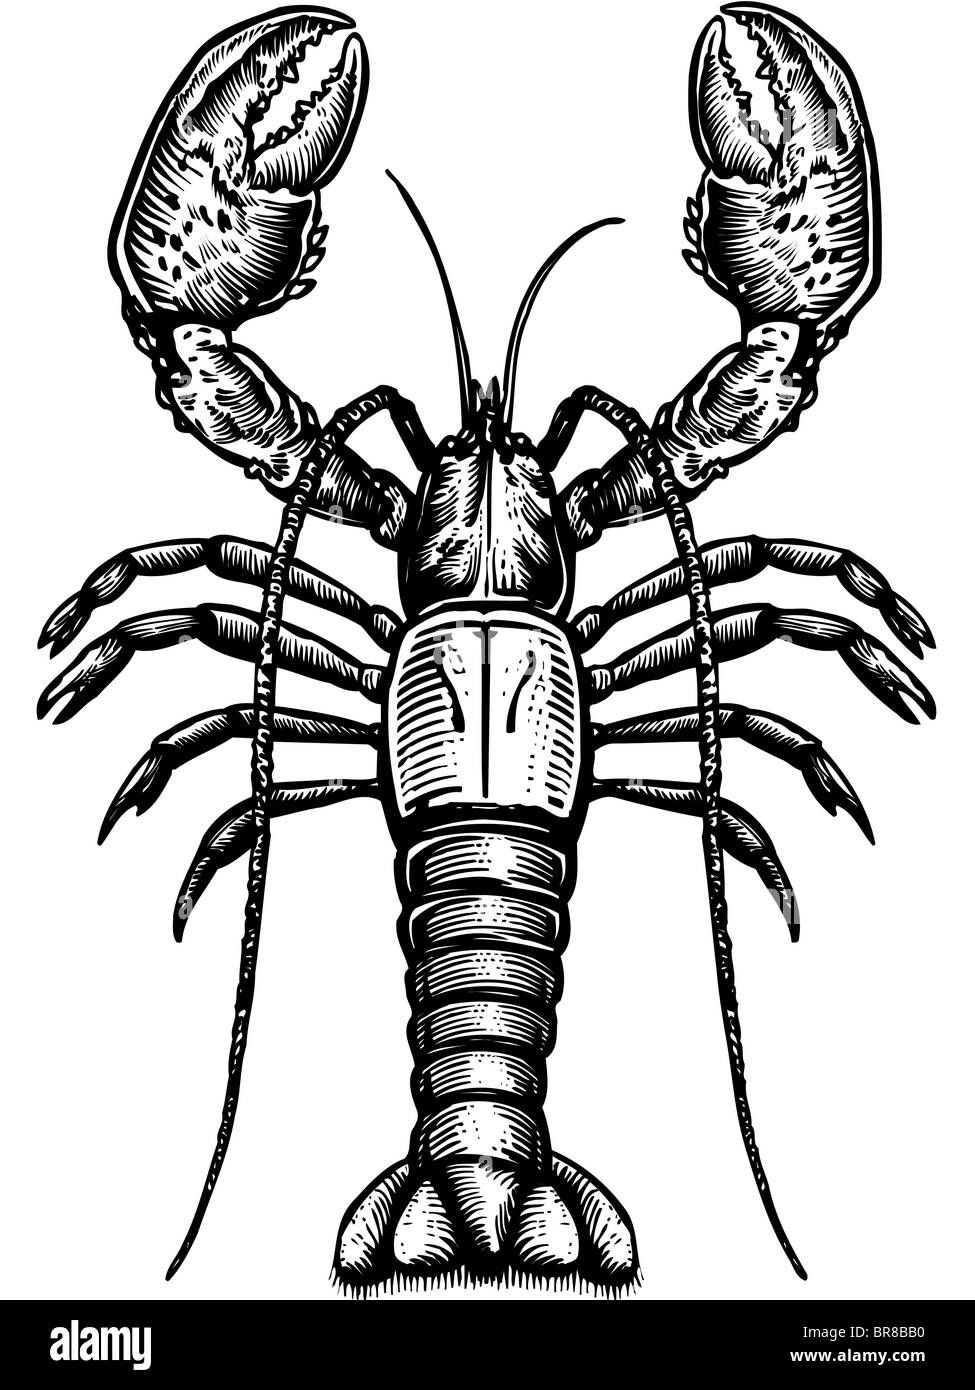 Un dessin en noir et blanc d'un homard Banque D'Images